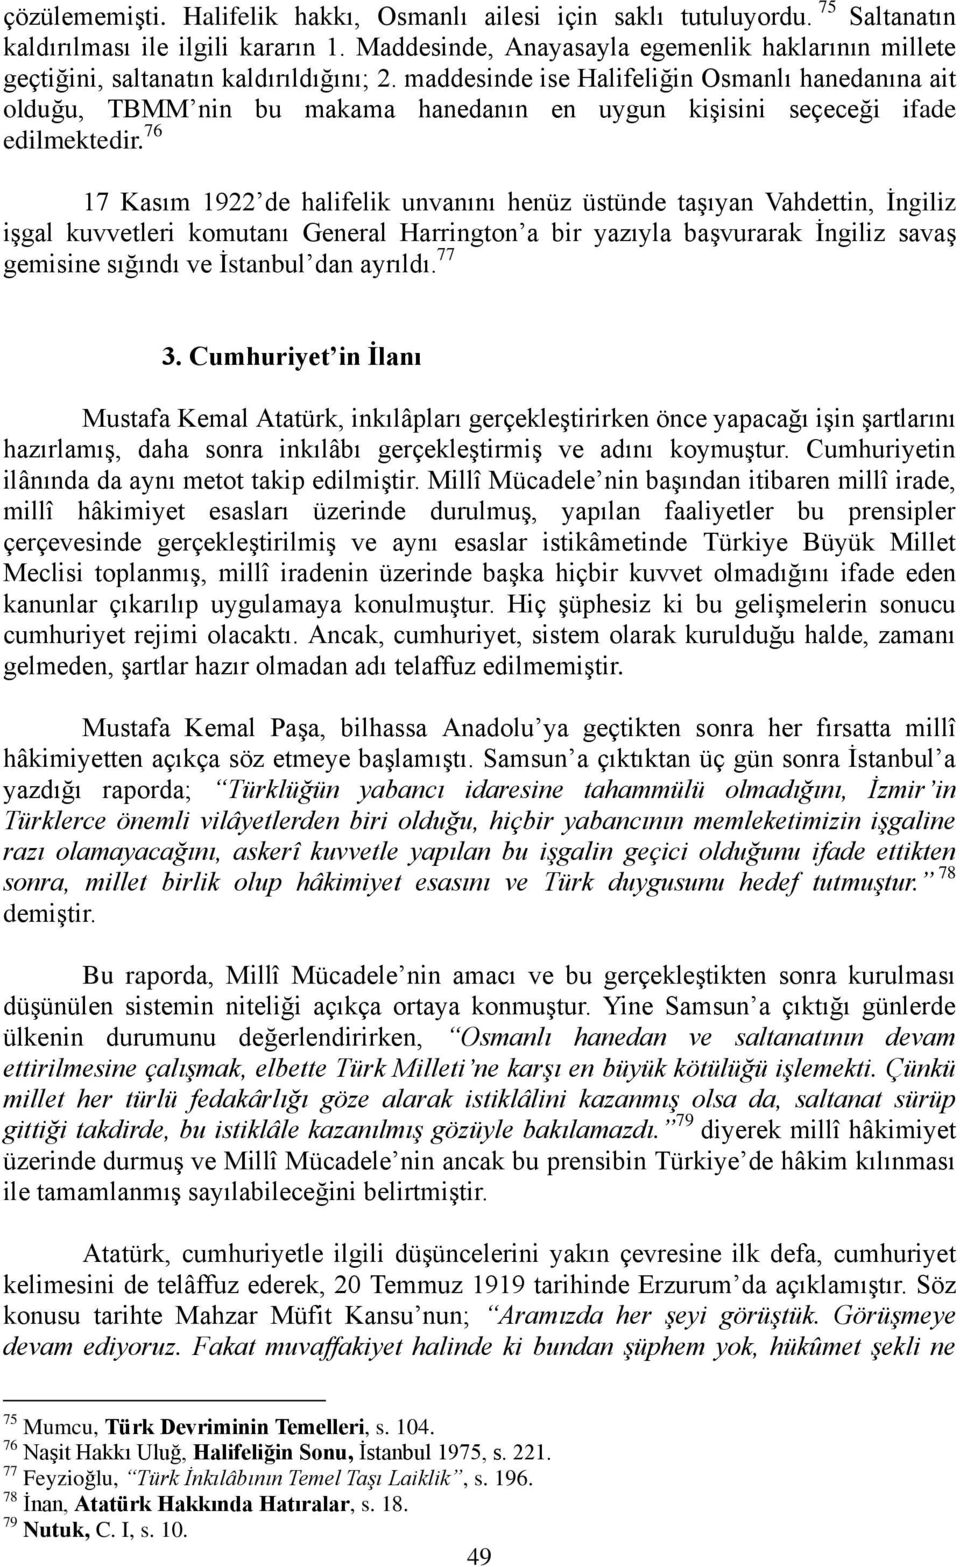 maddesinde ise Halifeliğin Osmanlı hanedanına ait olduğu, TBMM nin bu makama hanedanın en uygun kiģisini seçeceği ifade edilmektedir.